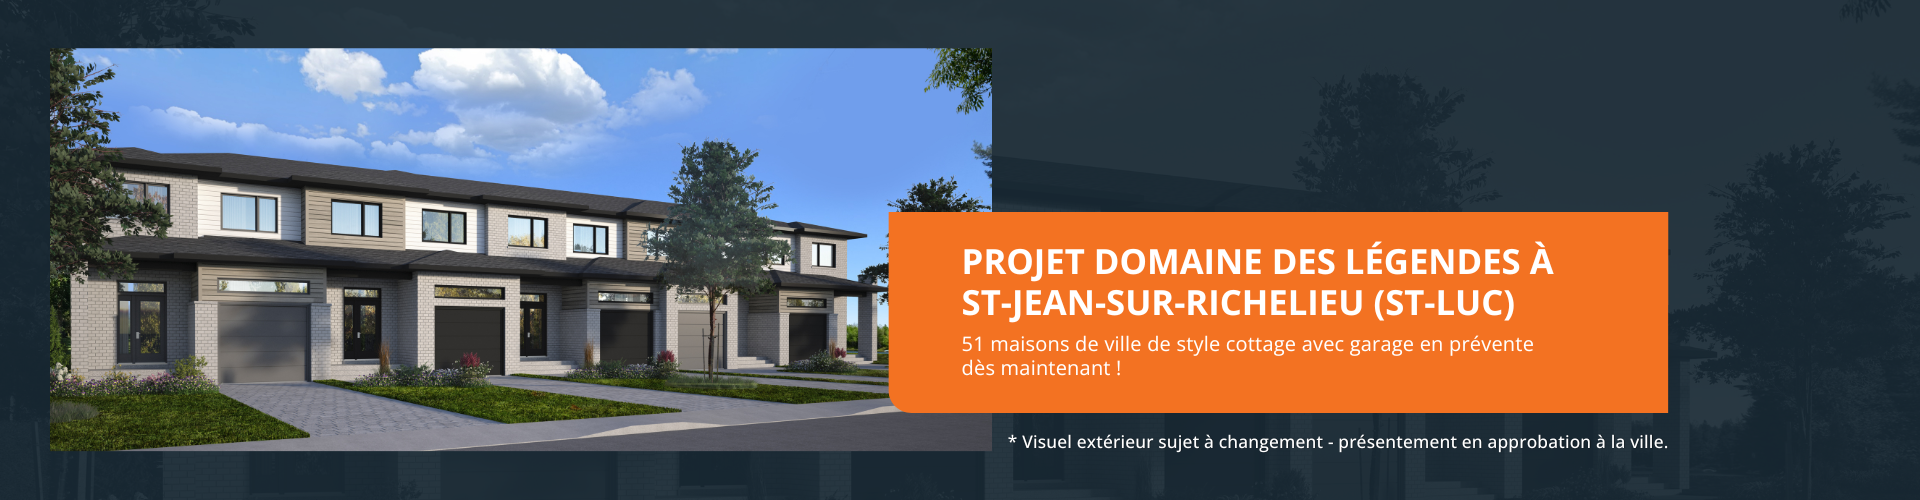 Habitations Iso Design projet Domaine des Légendes à St-Jean-sur-Richelieu